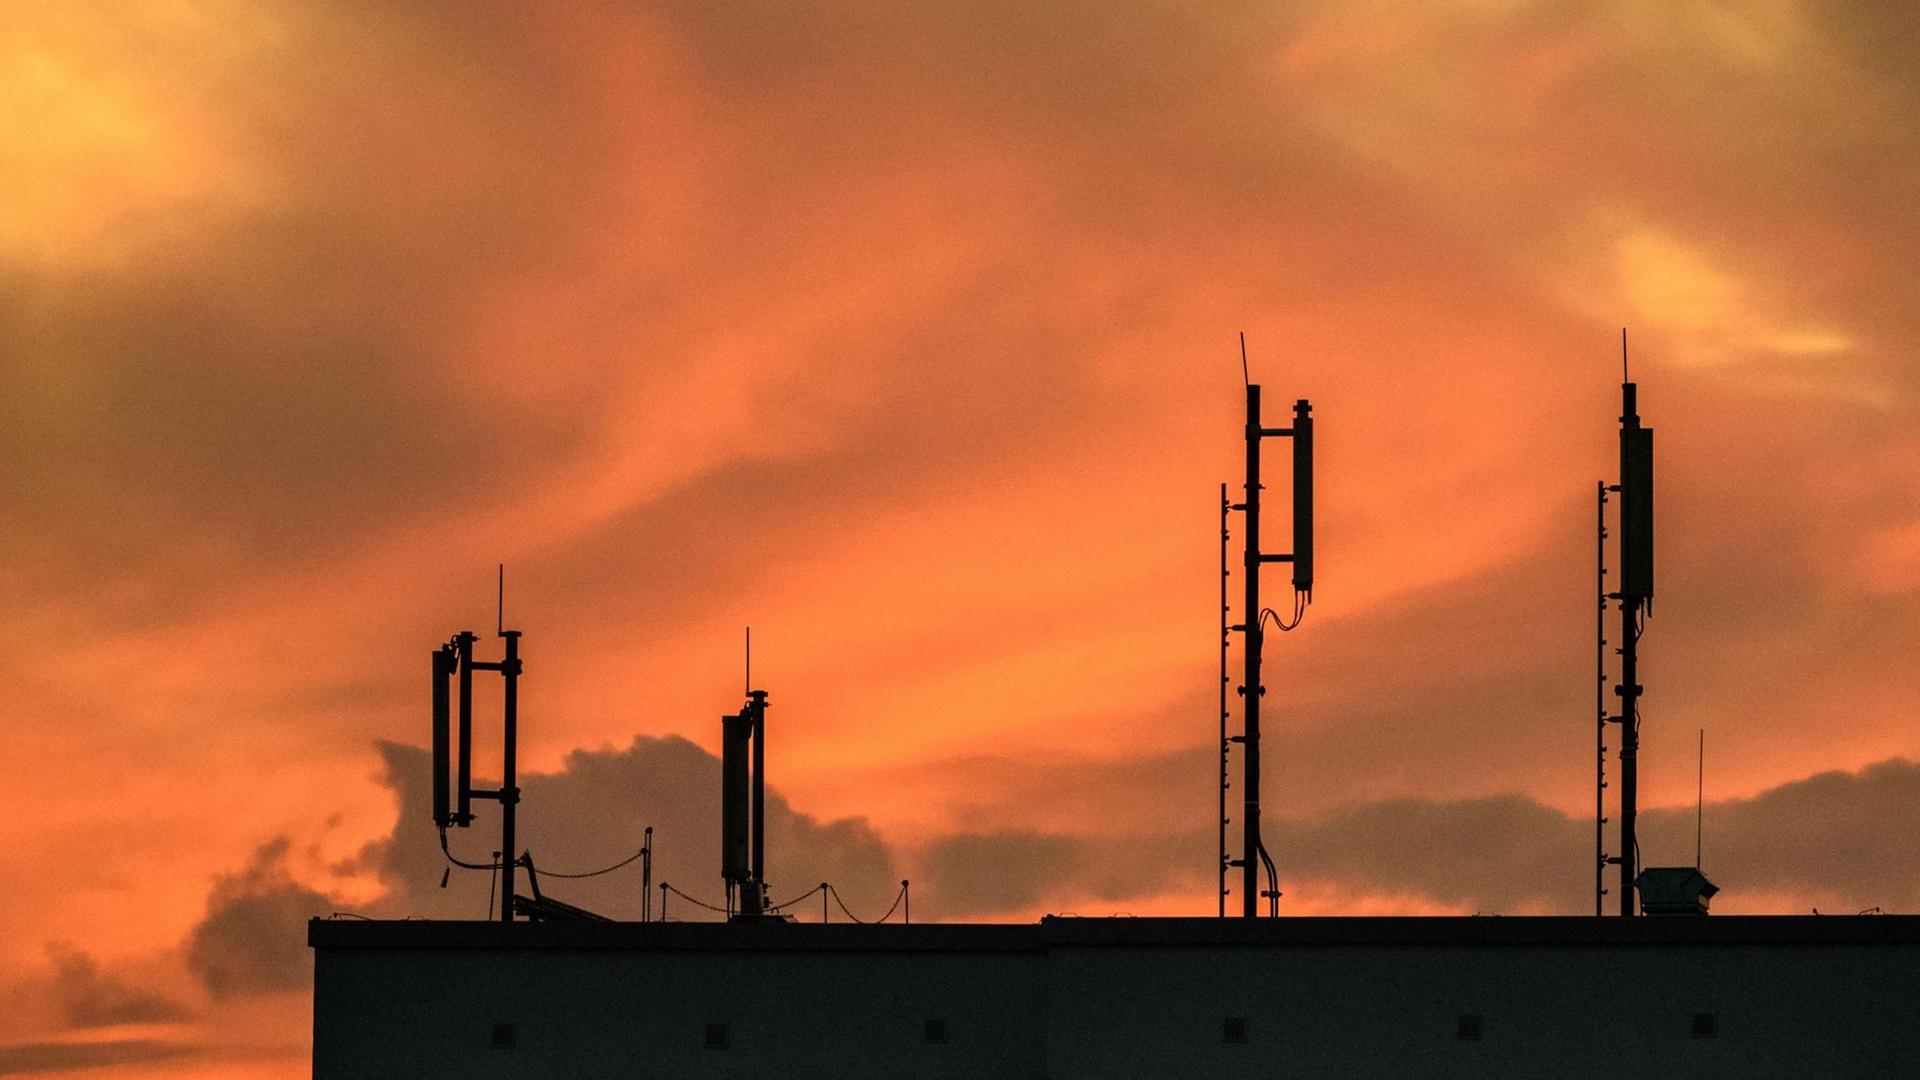 Mobilfunk-Antennen auf einem Dach während des Sonnenuntergangs